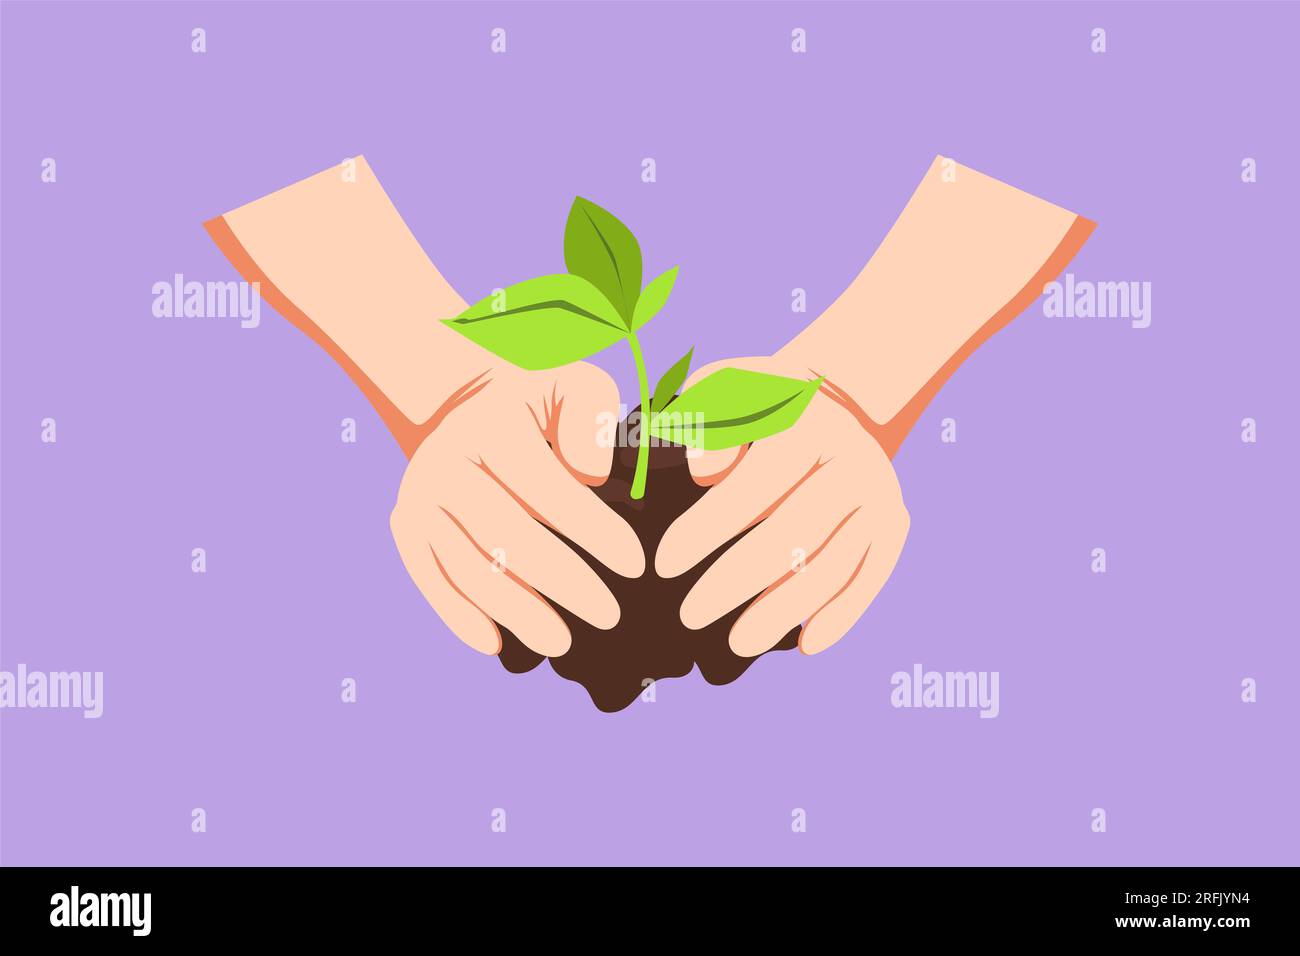 Conception plate graphique dessinant vue de face des mains de fermier grandissant jeune arbre, sauver le monde, guérir le monde, aimer la nature. Écologie arbre de gaufrage grandissant et pl Banque D'Images